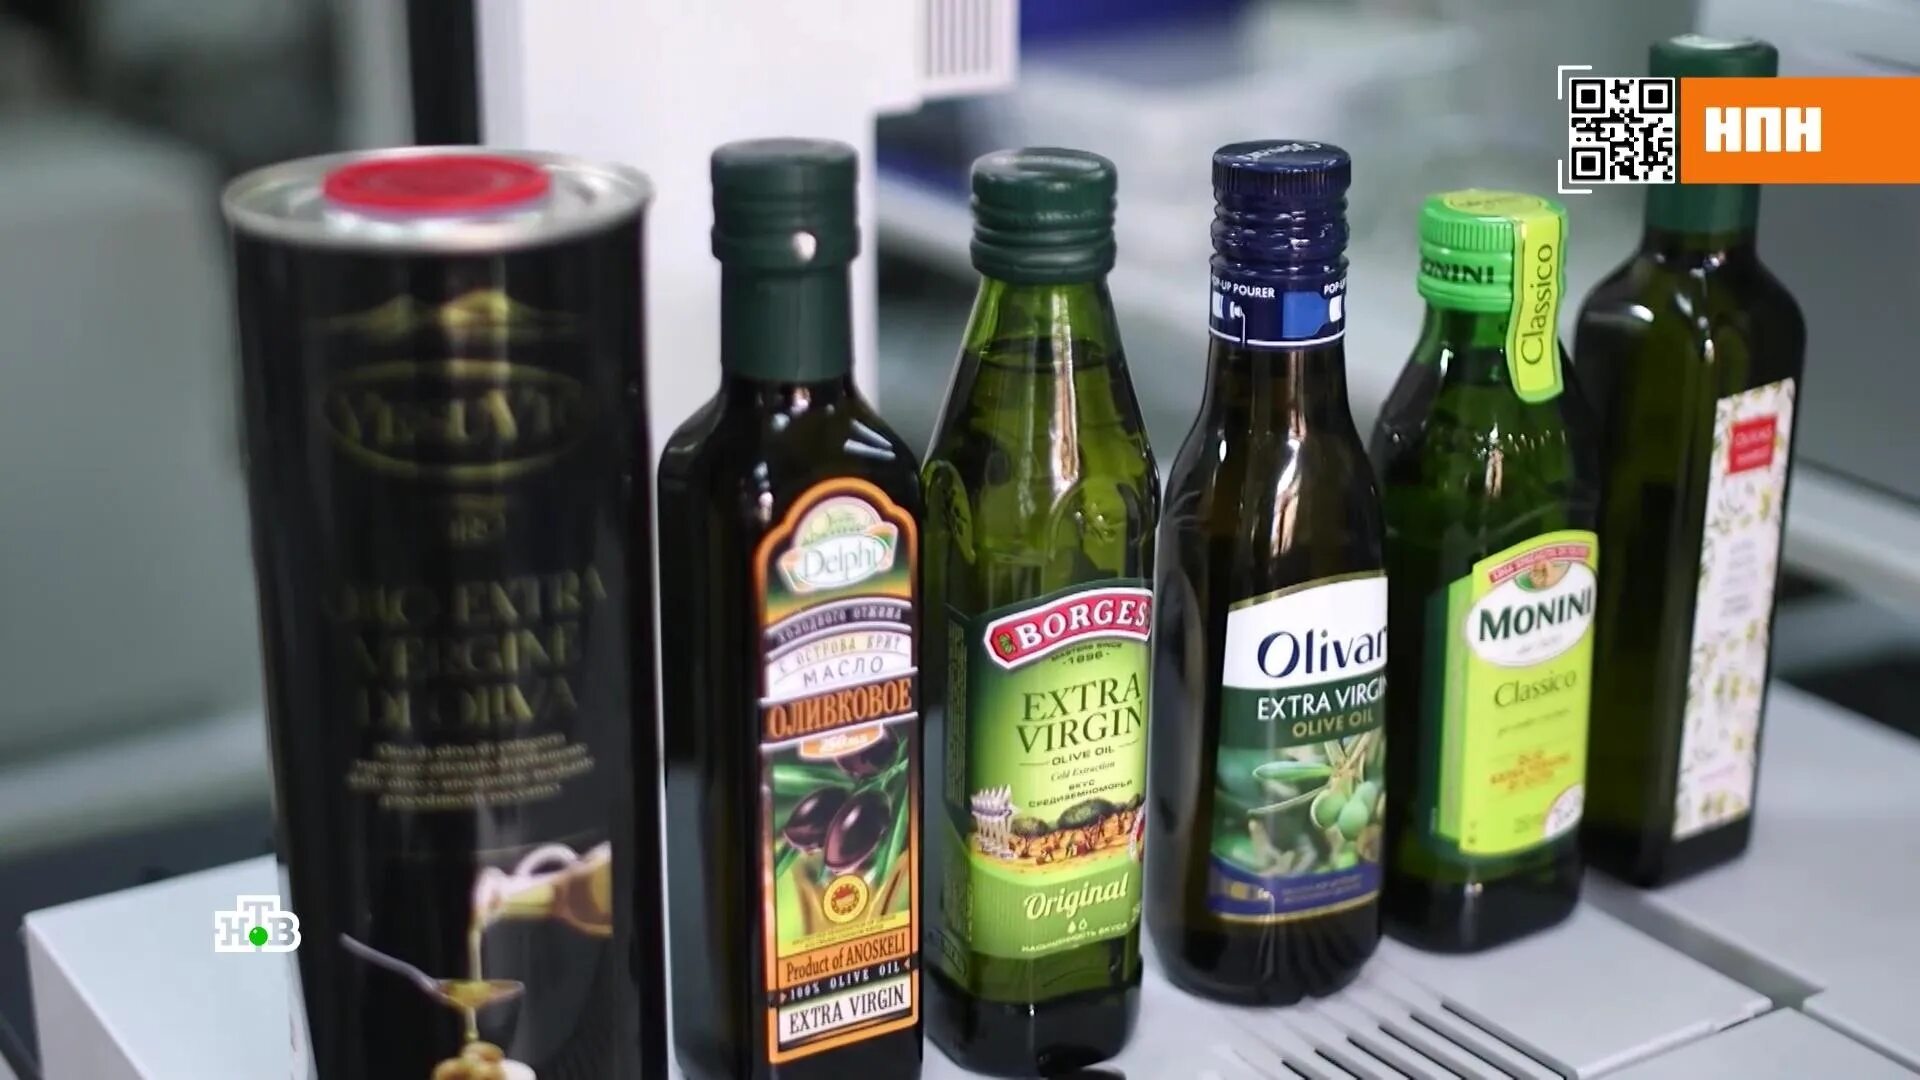 Поддельное оливковое масло. Поддельное оливковое масло бренды. Оливковое масло фальсификат.